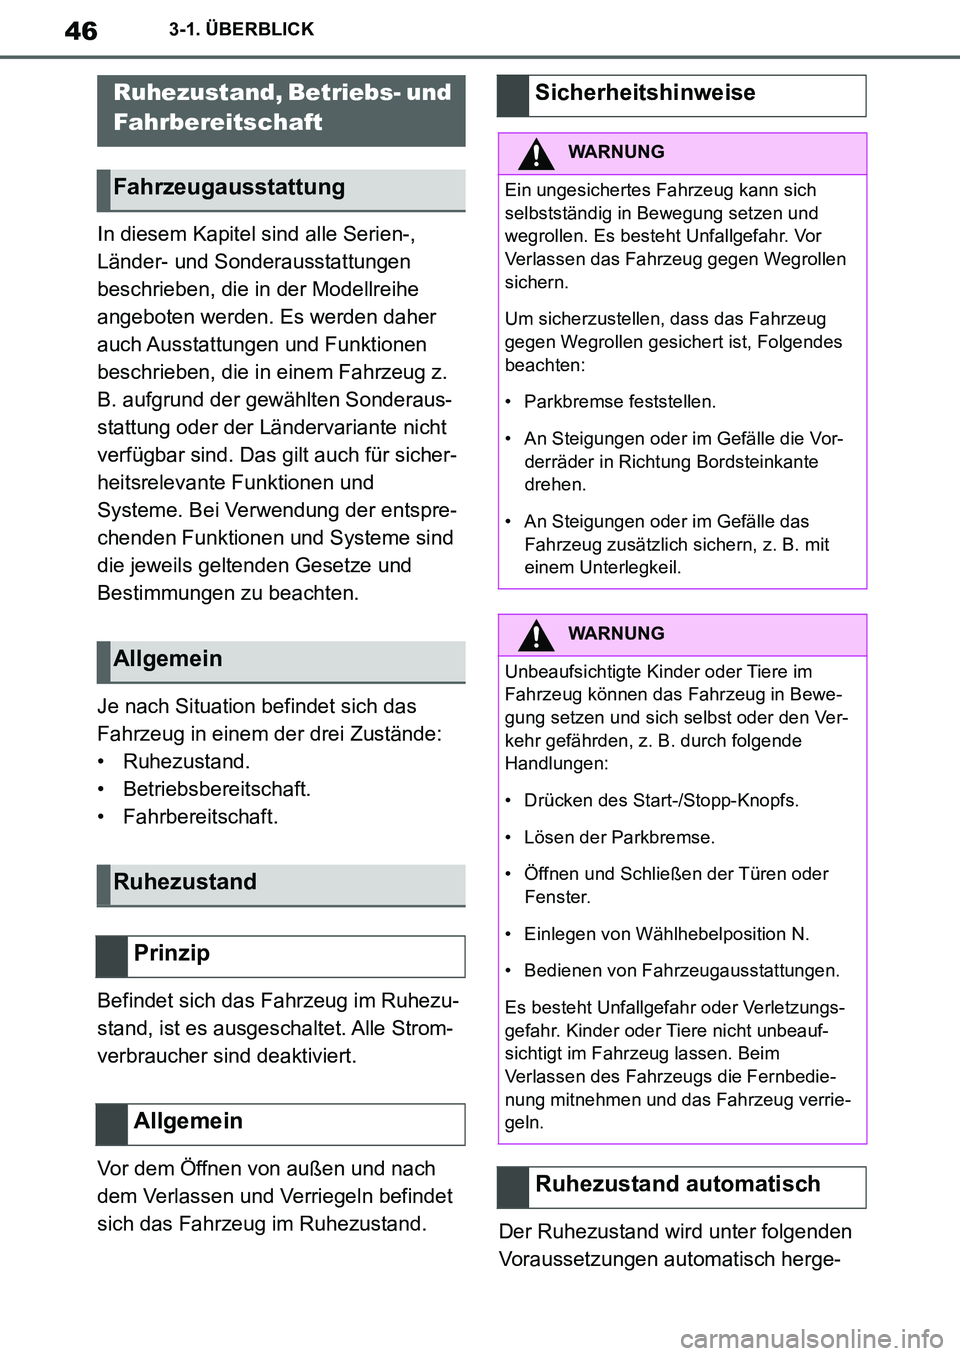 TOYOTA SUPRA 2020  Betriebsanleitungen (in German) 46
Supra Owners Manual_EM
3-1. ÜBERBLICK
In diesem Kapitel sind alle Serien-, 
Länder- und Sonderausstattungen 
beschrieben, die in der Modellreihe 
angeboten werden. Es werden daher 
auch Ausstatt